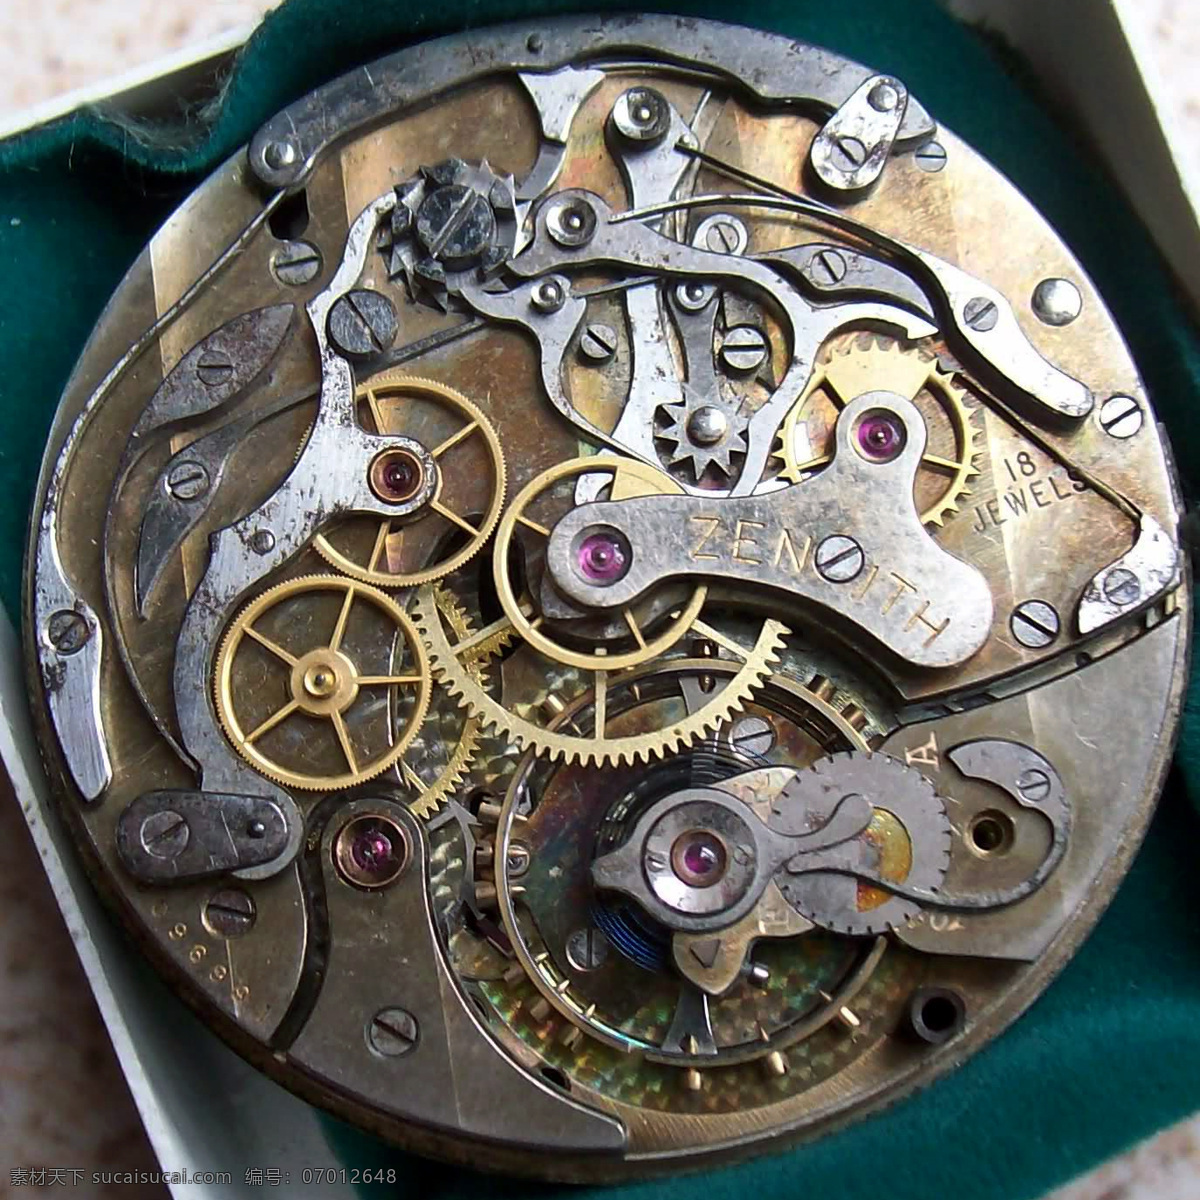 表 齿轮 工业生产 机械 金属 精美 内涵 奢侈品 机芯 watch movement 腕表 手表 艺术 时间 陀飞轮 发条 现代科技 淘宝素材 其他淘宝素材